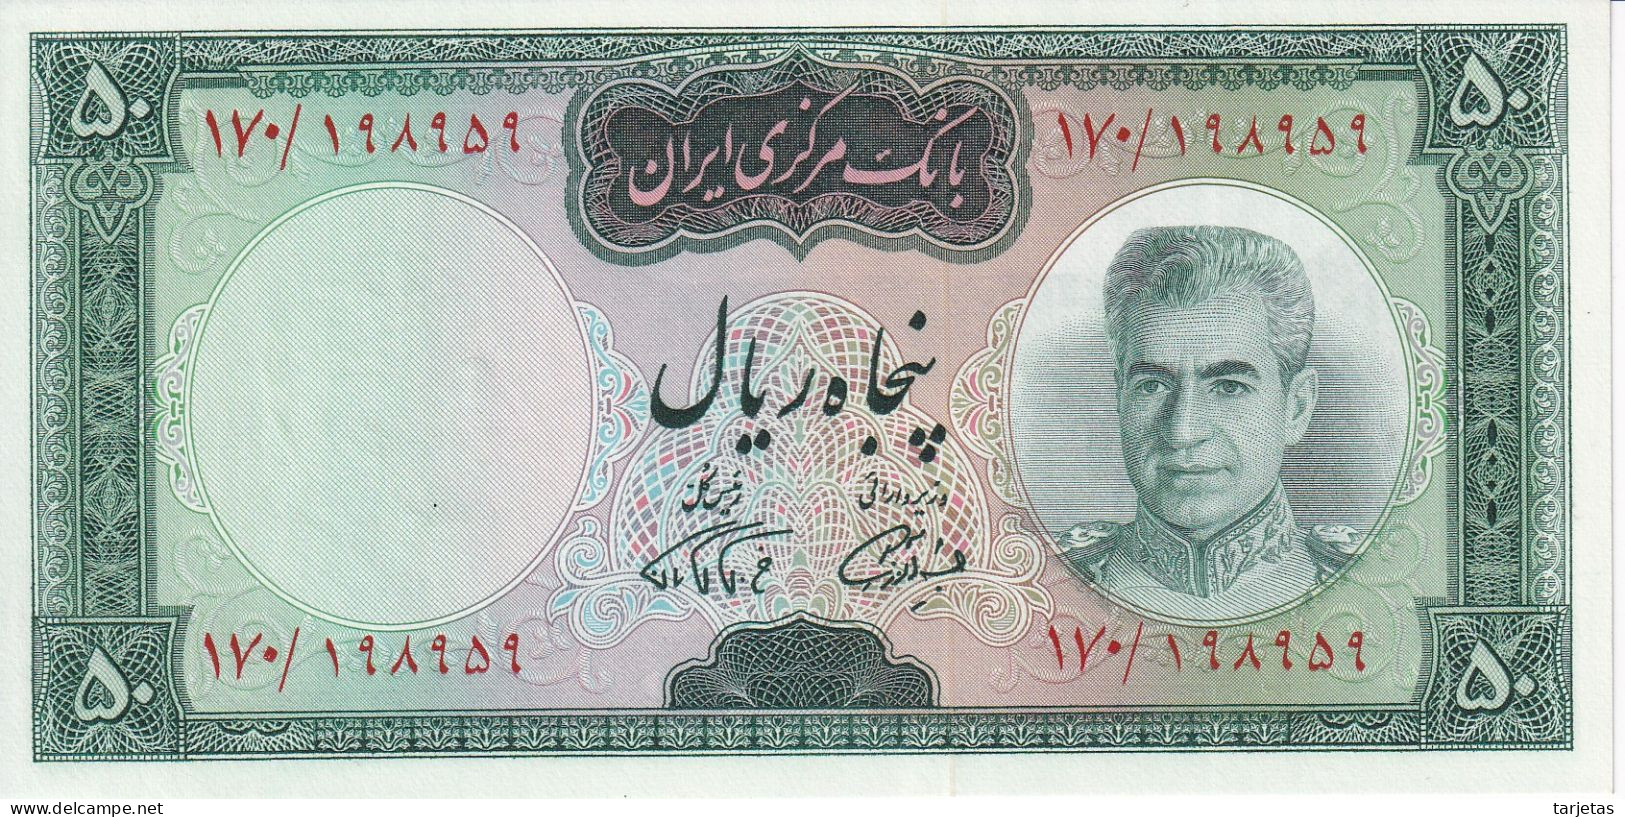 BILLETE DE IRAN DE 50 RIALS DEL AÑO 1969 SIN CIRCULAR (UNC) (BANKNOTE) - Iran